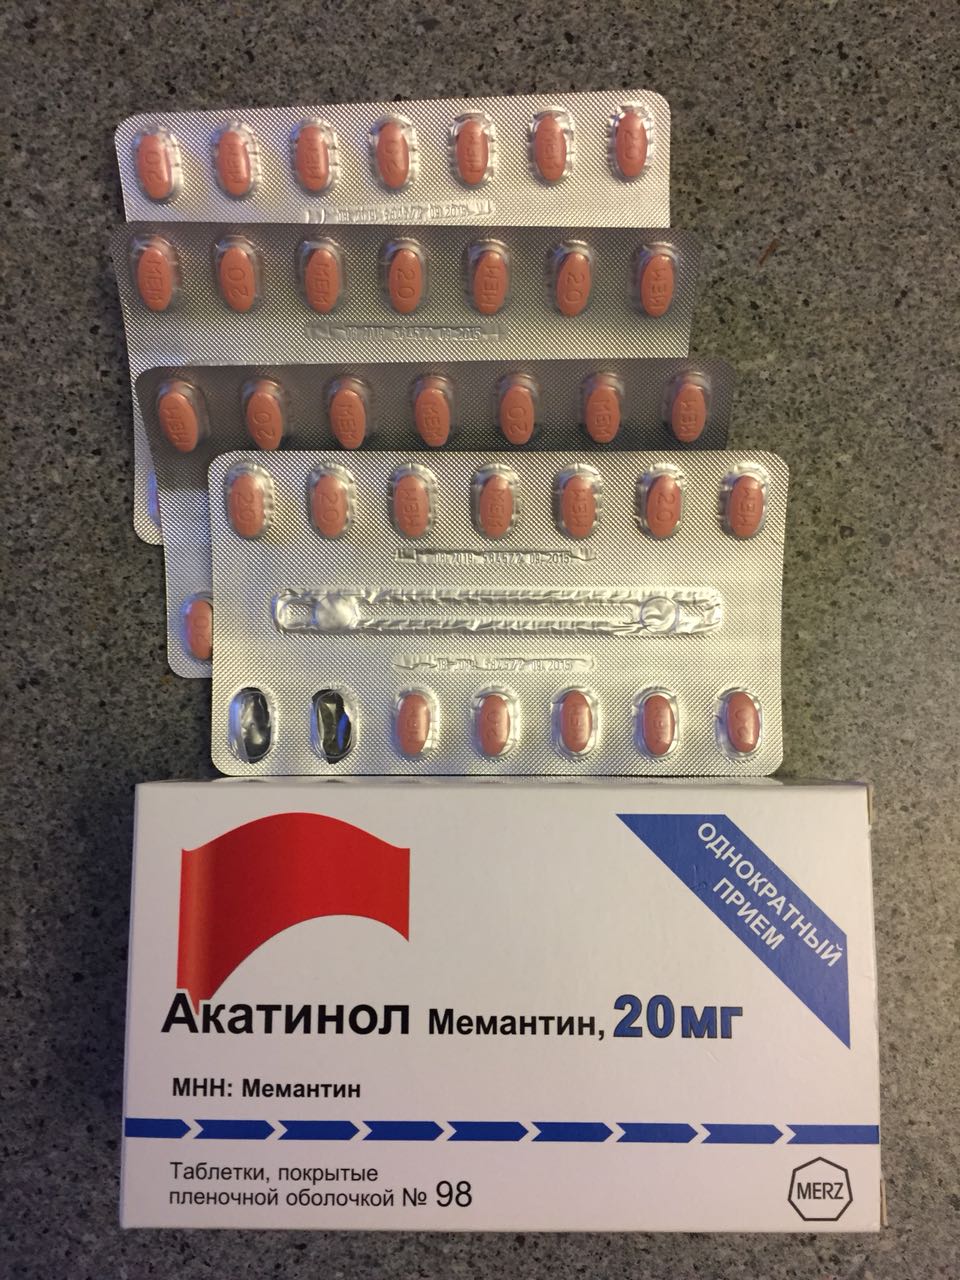 Акатинол 20 мг купить